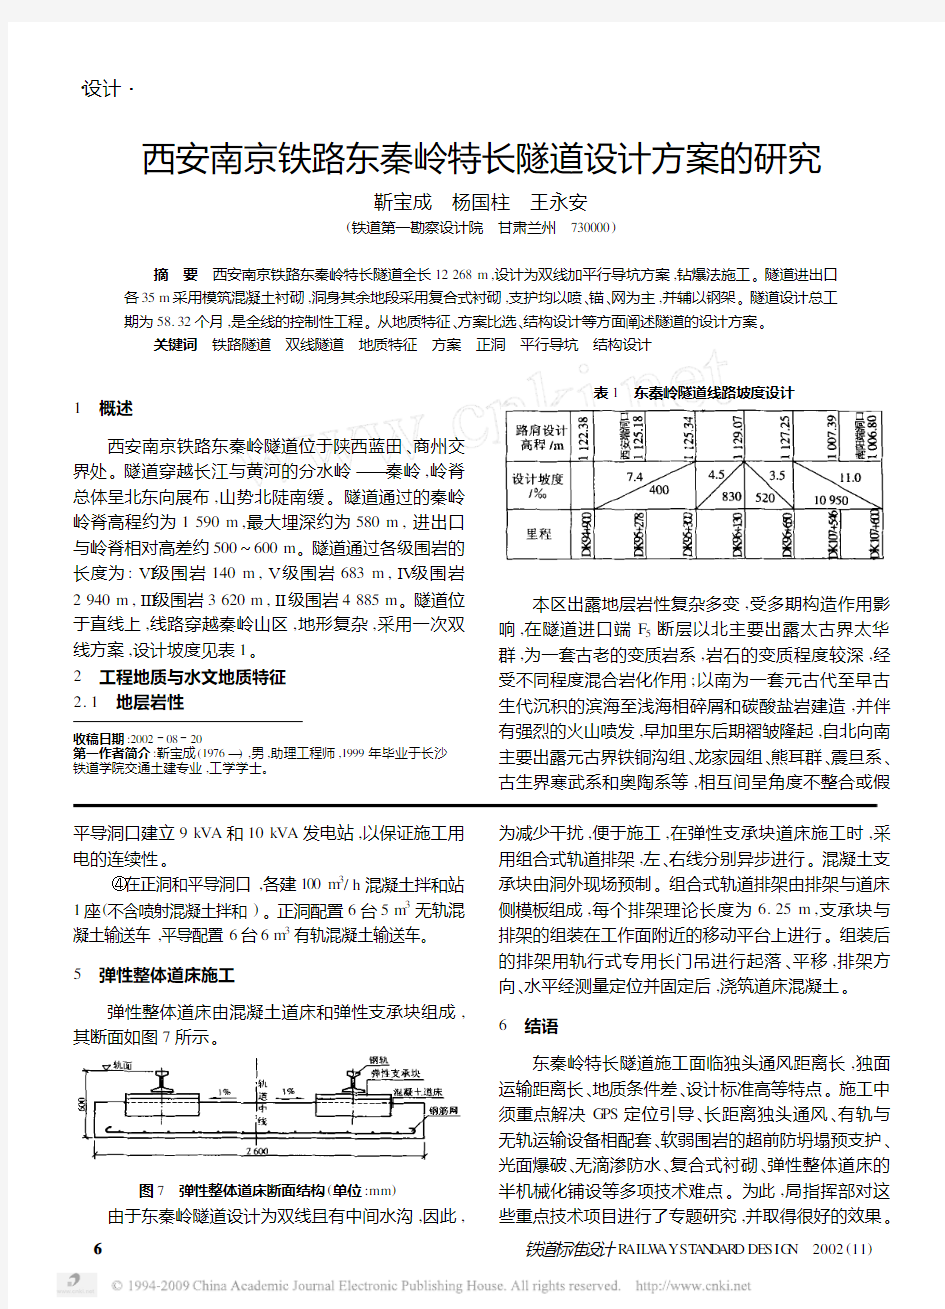 西安南京铁路东秦岭特长隧道设计方案的研究